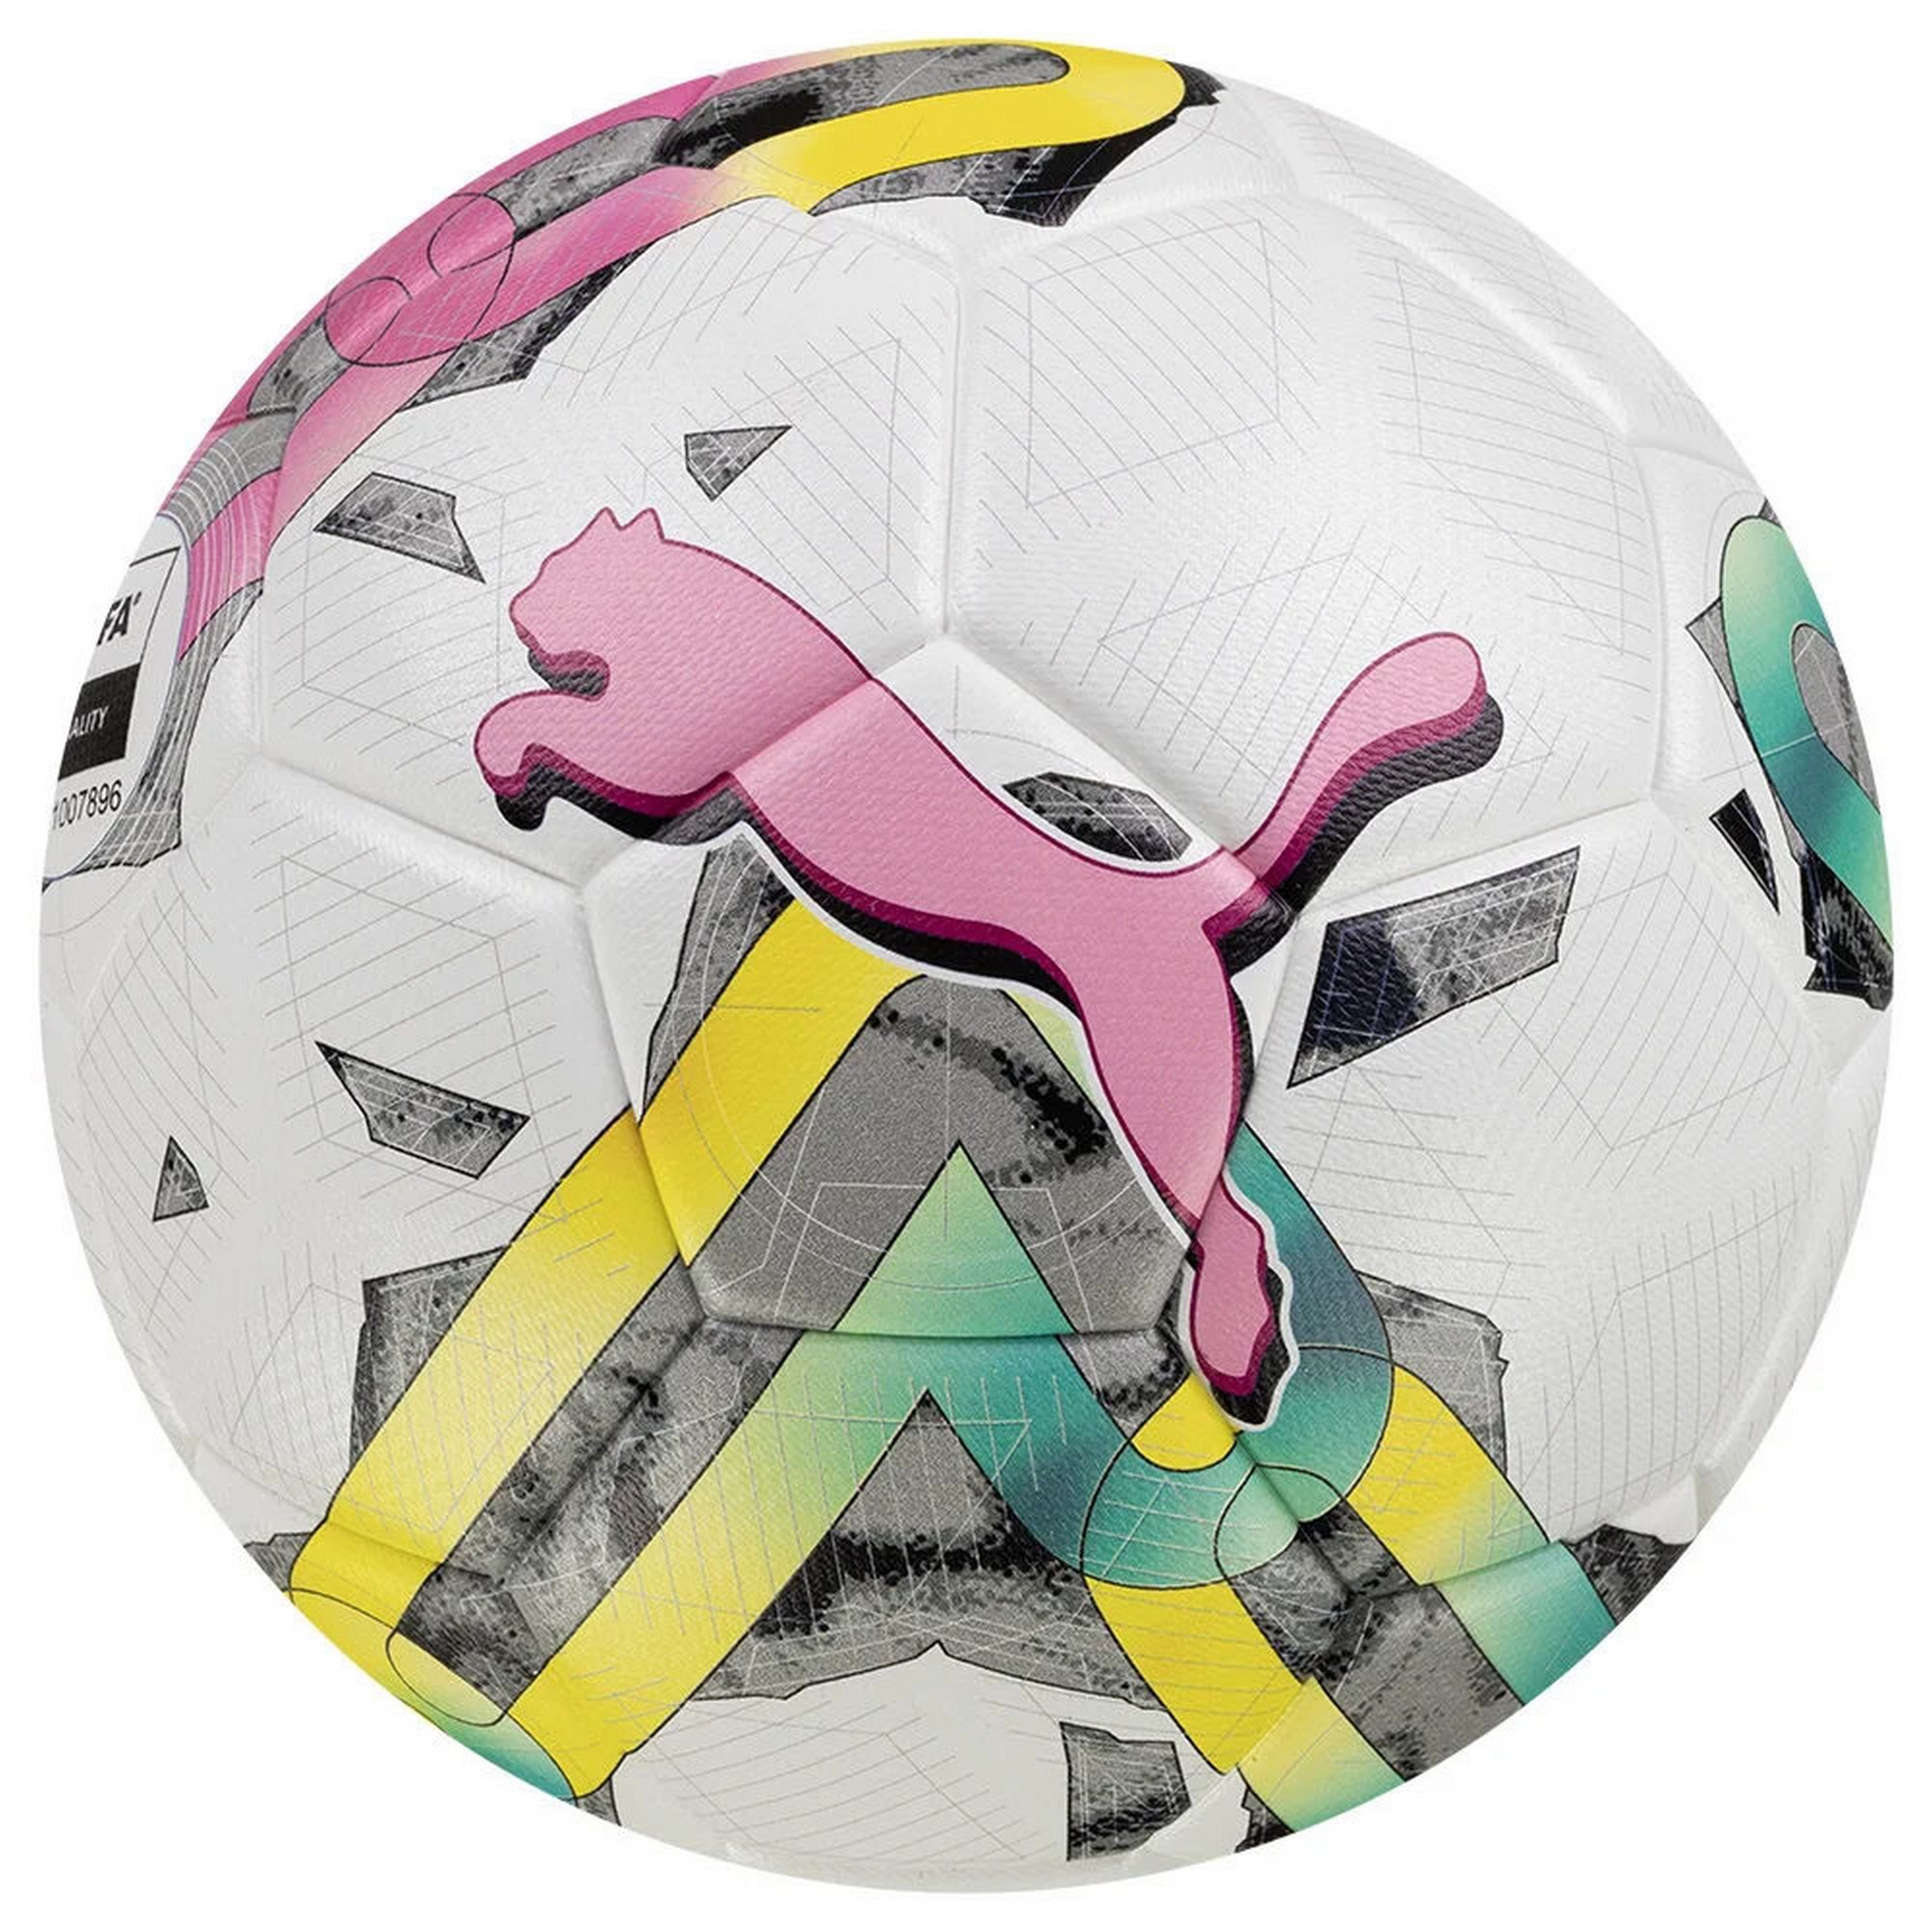 Мяч футбольный Puma Orbita 3 TB 08377701 FIFA Quality, р.4 2000_2000